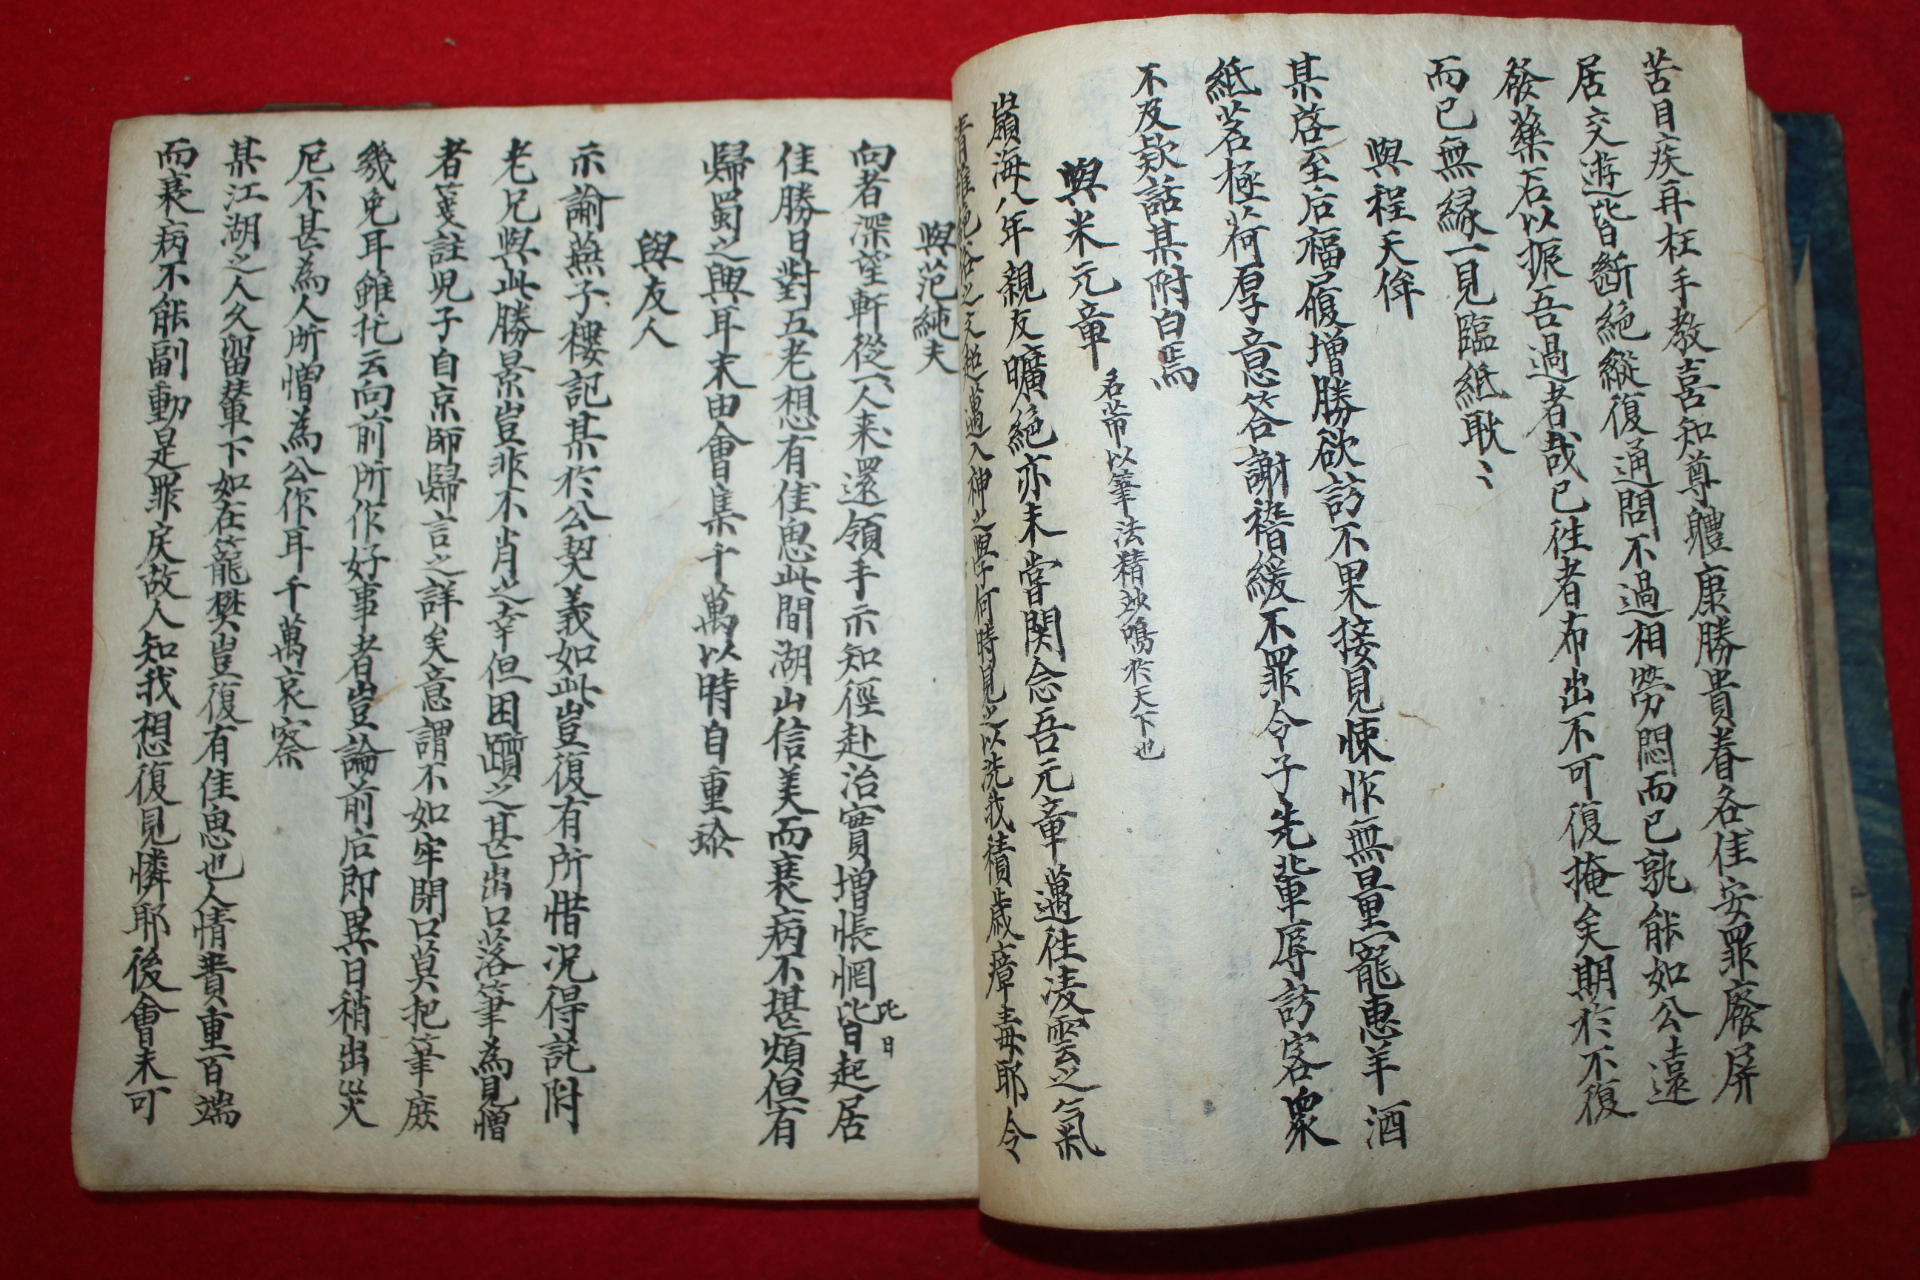 조선시대 필사본 구소수동초선(歐蘇手東抄選)